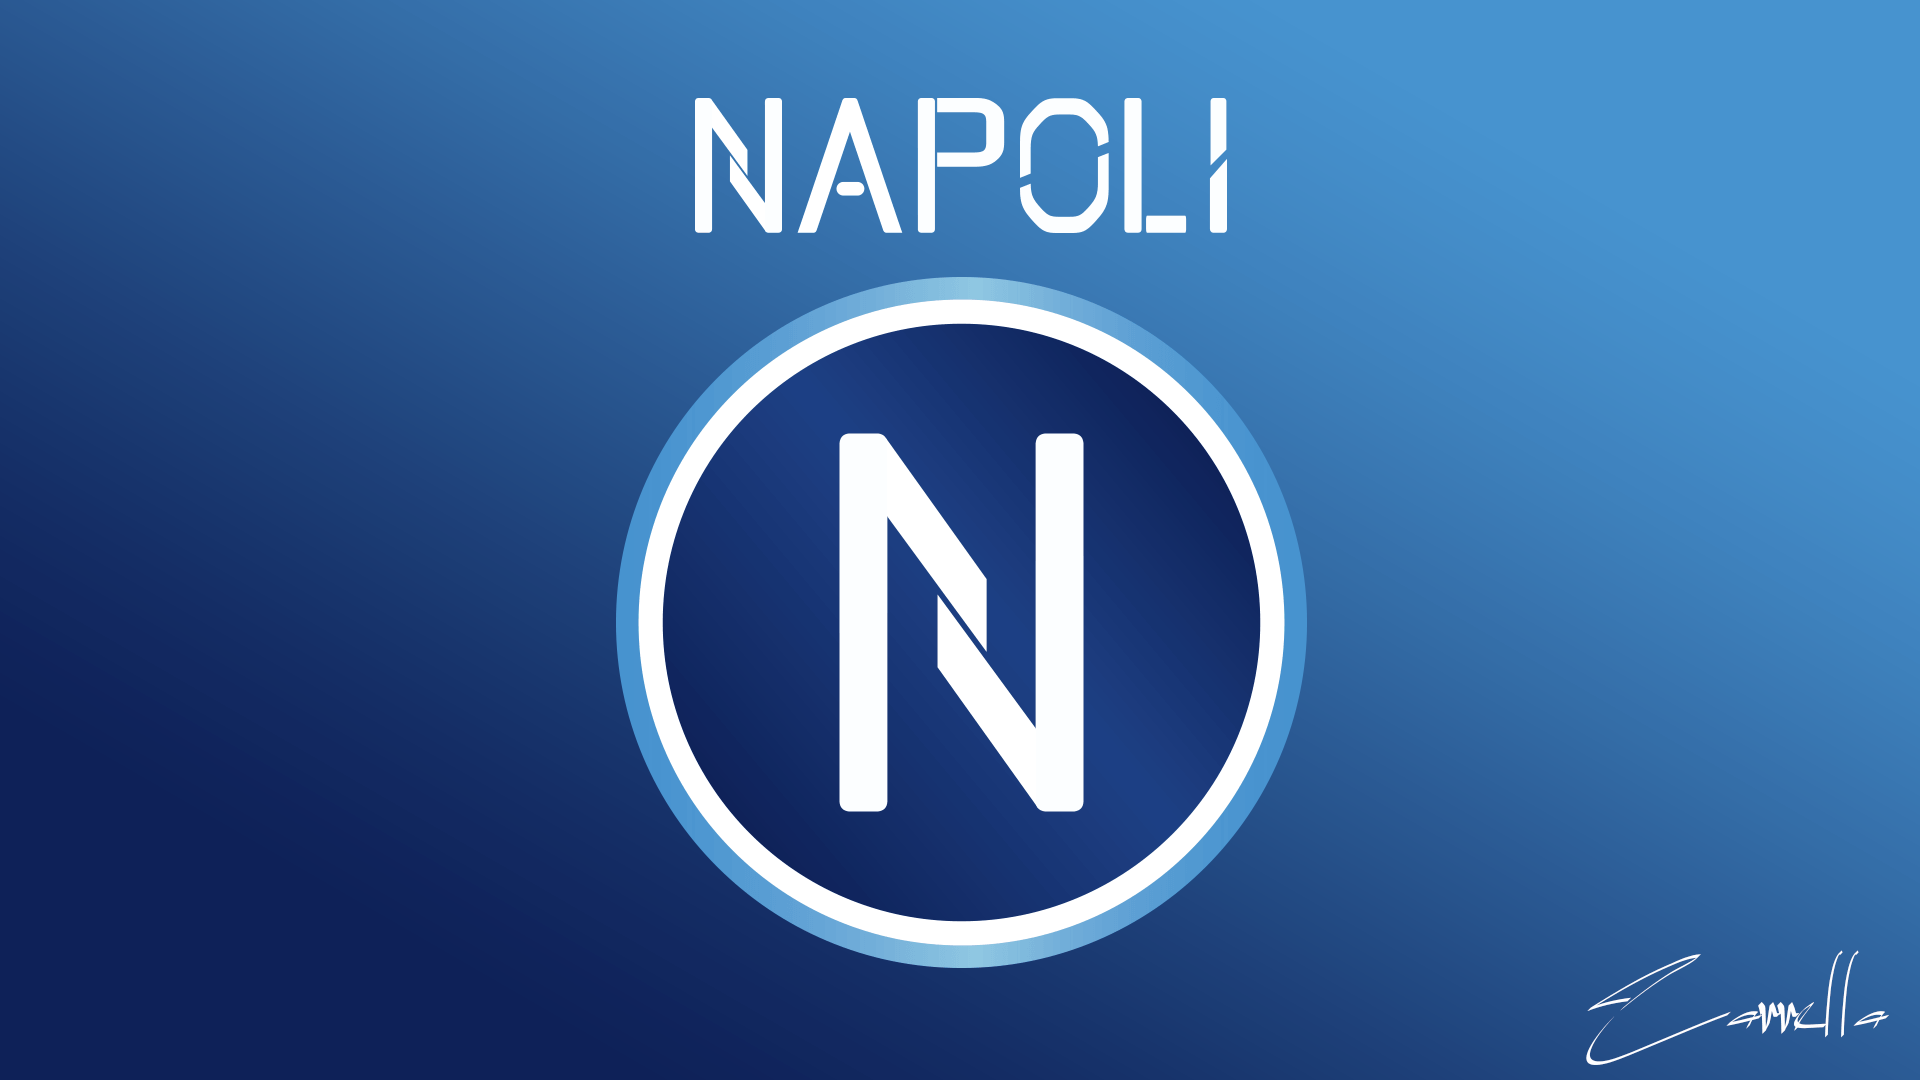 Napoli Logo - New Napoli logo idea [minimal] What do you think?